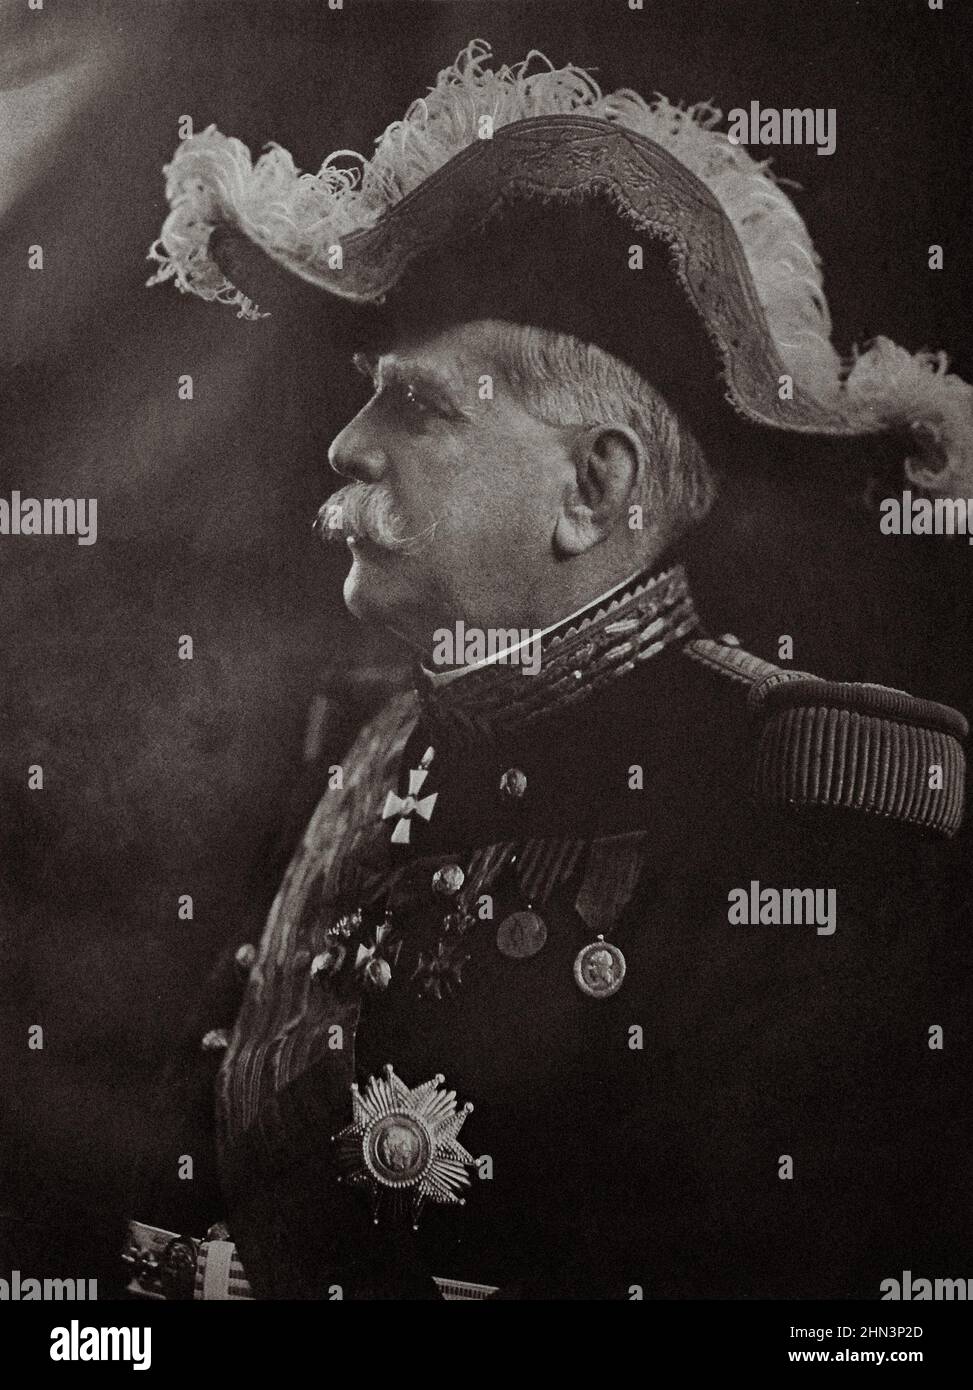 Vintage-Foto von Marschall Joseph Joffre. Joseph Jacques Césaire Joffre (1852–1931) war ein französischer General, der als Oberbefehlshaber der französischen Sprache diente Stockfoto